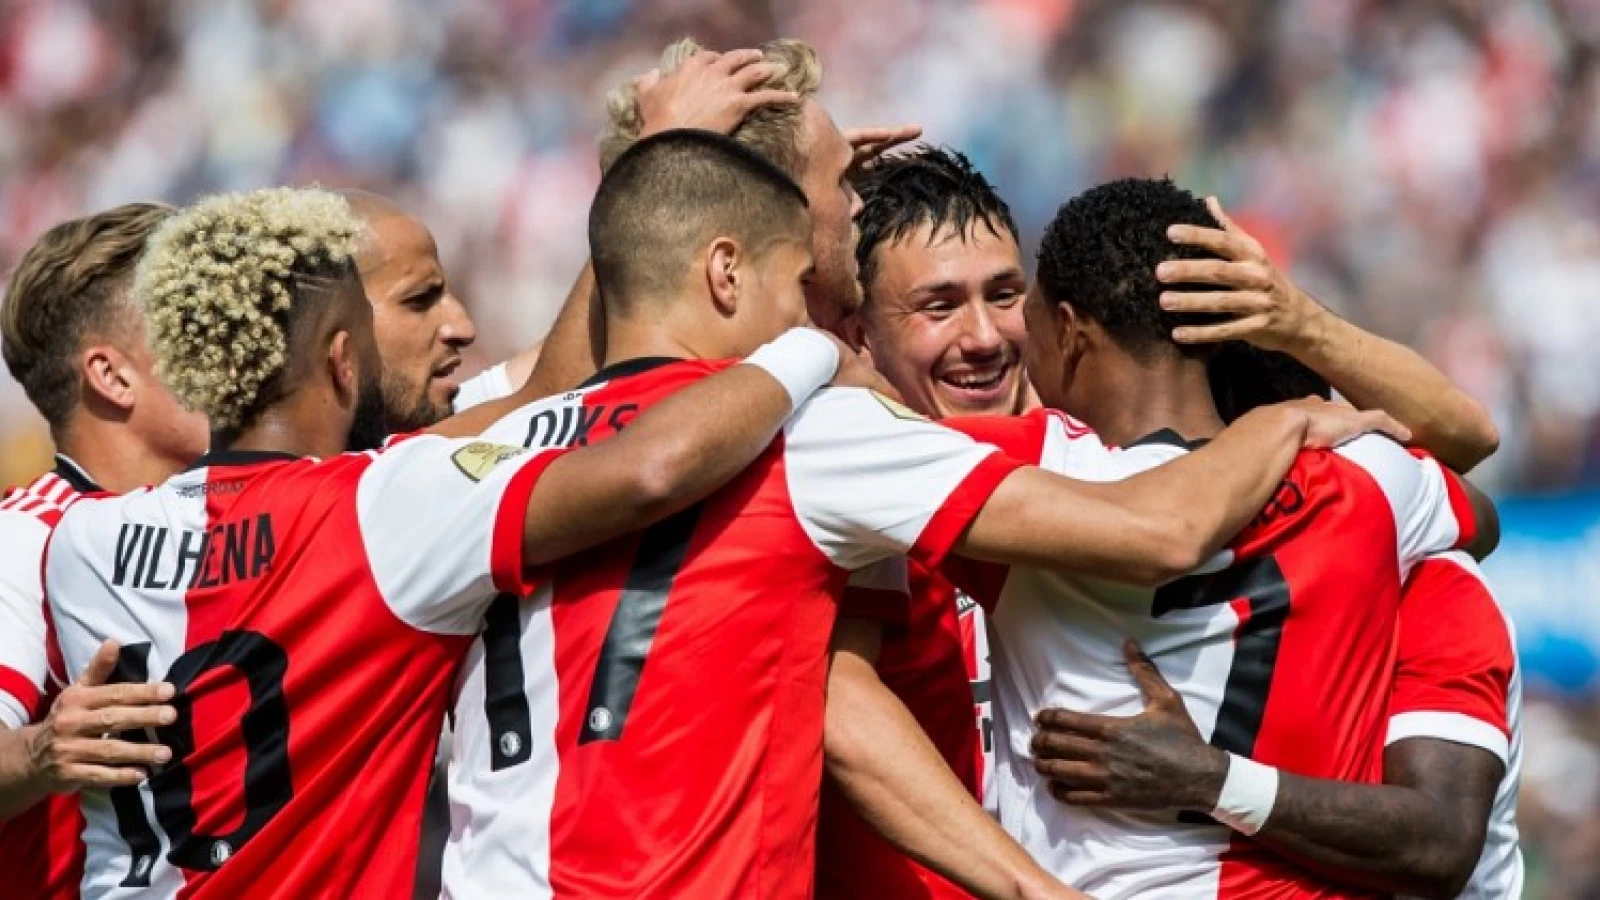 OVERZICHT | Selectie Feyenoord voor Champions League bekend